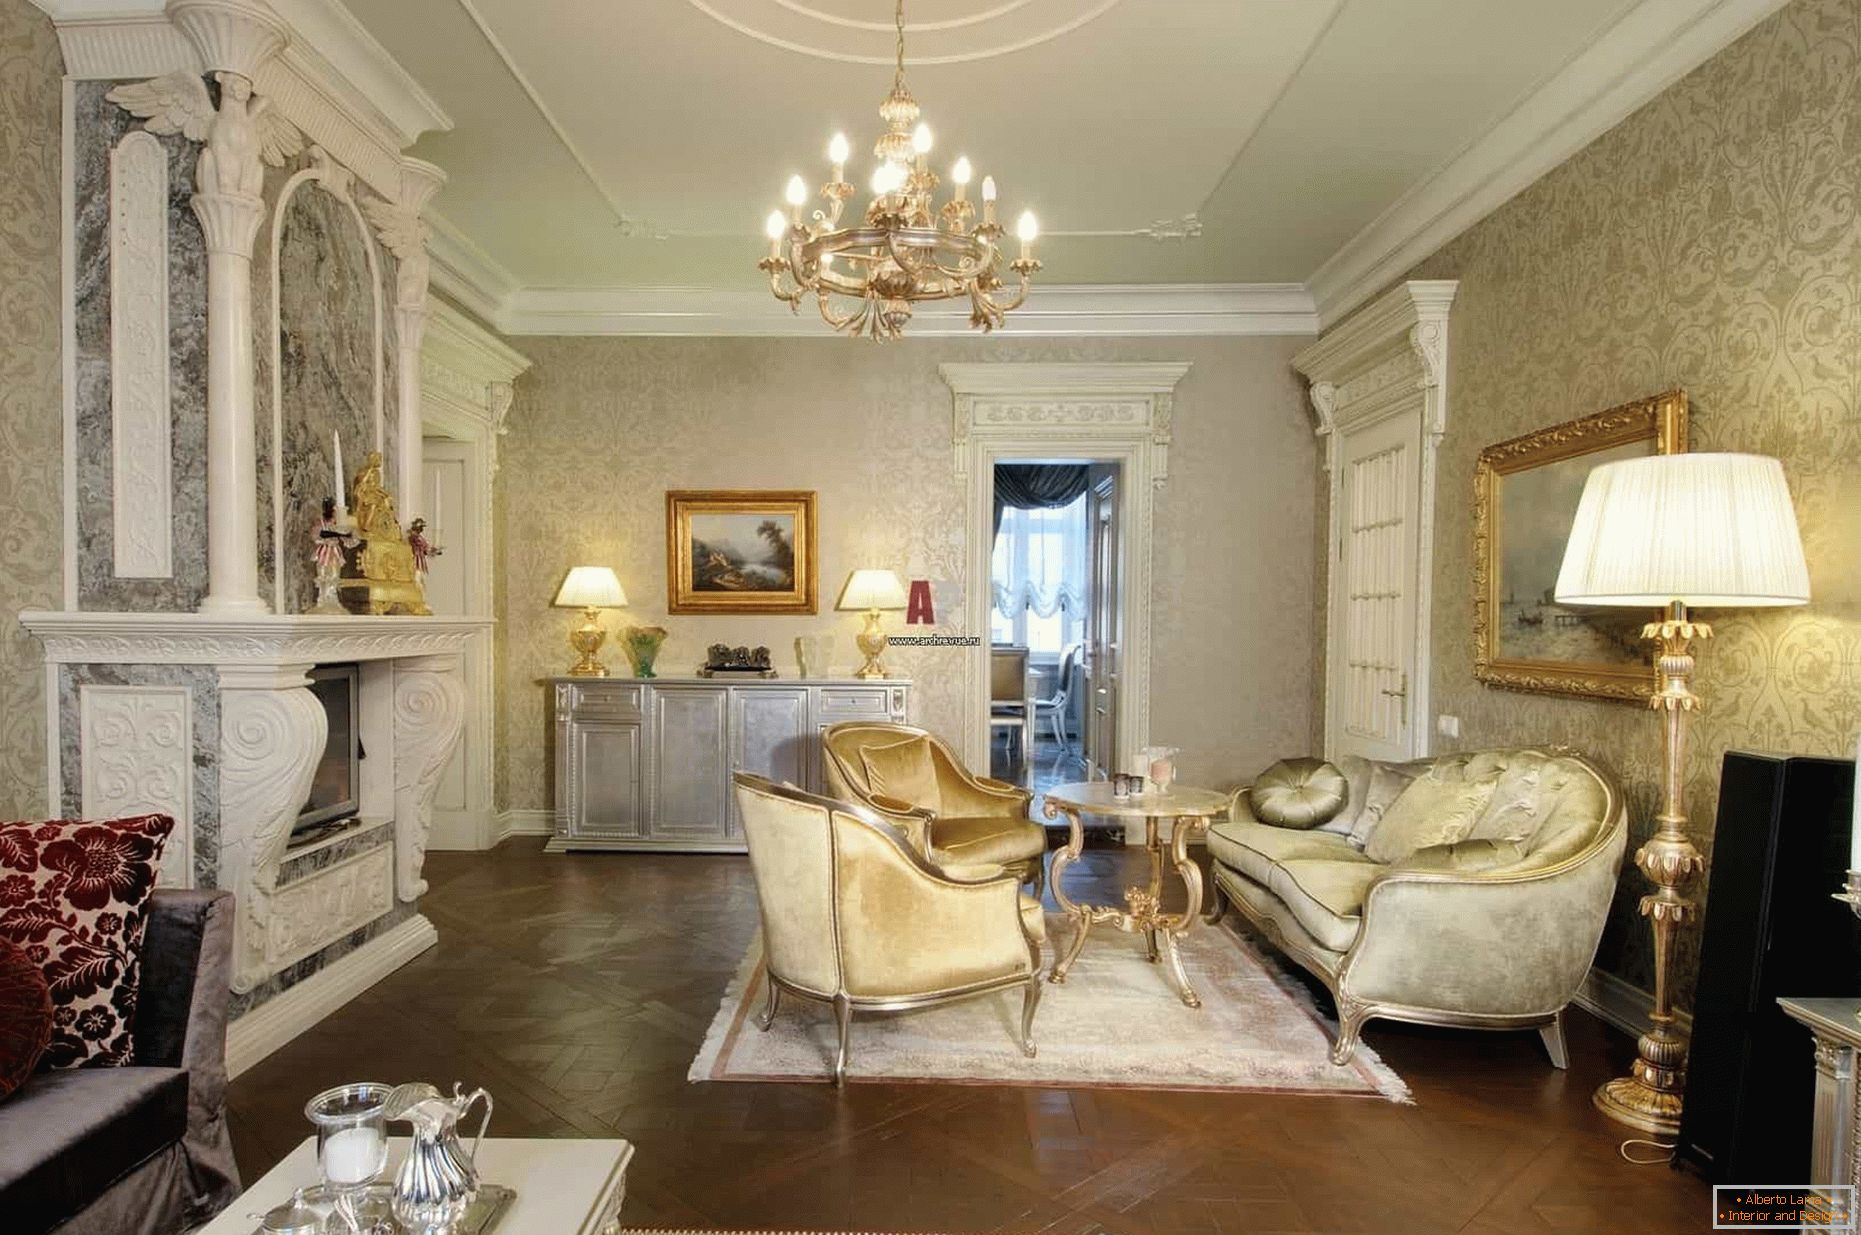 Sala de estar em estilo clássico com lareira